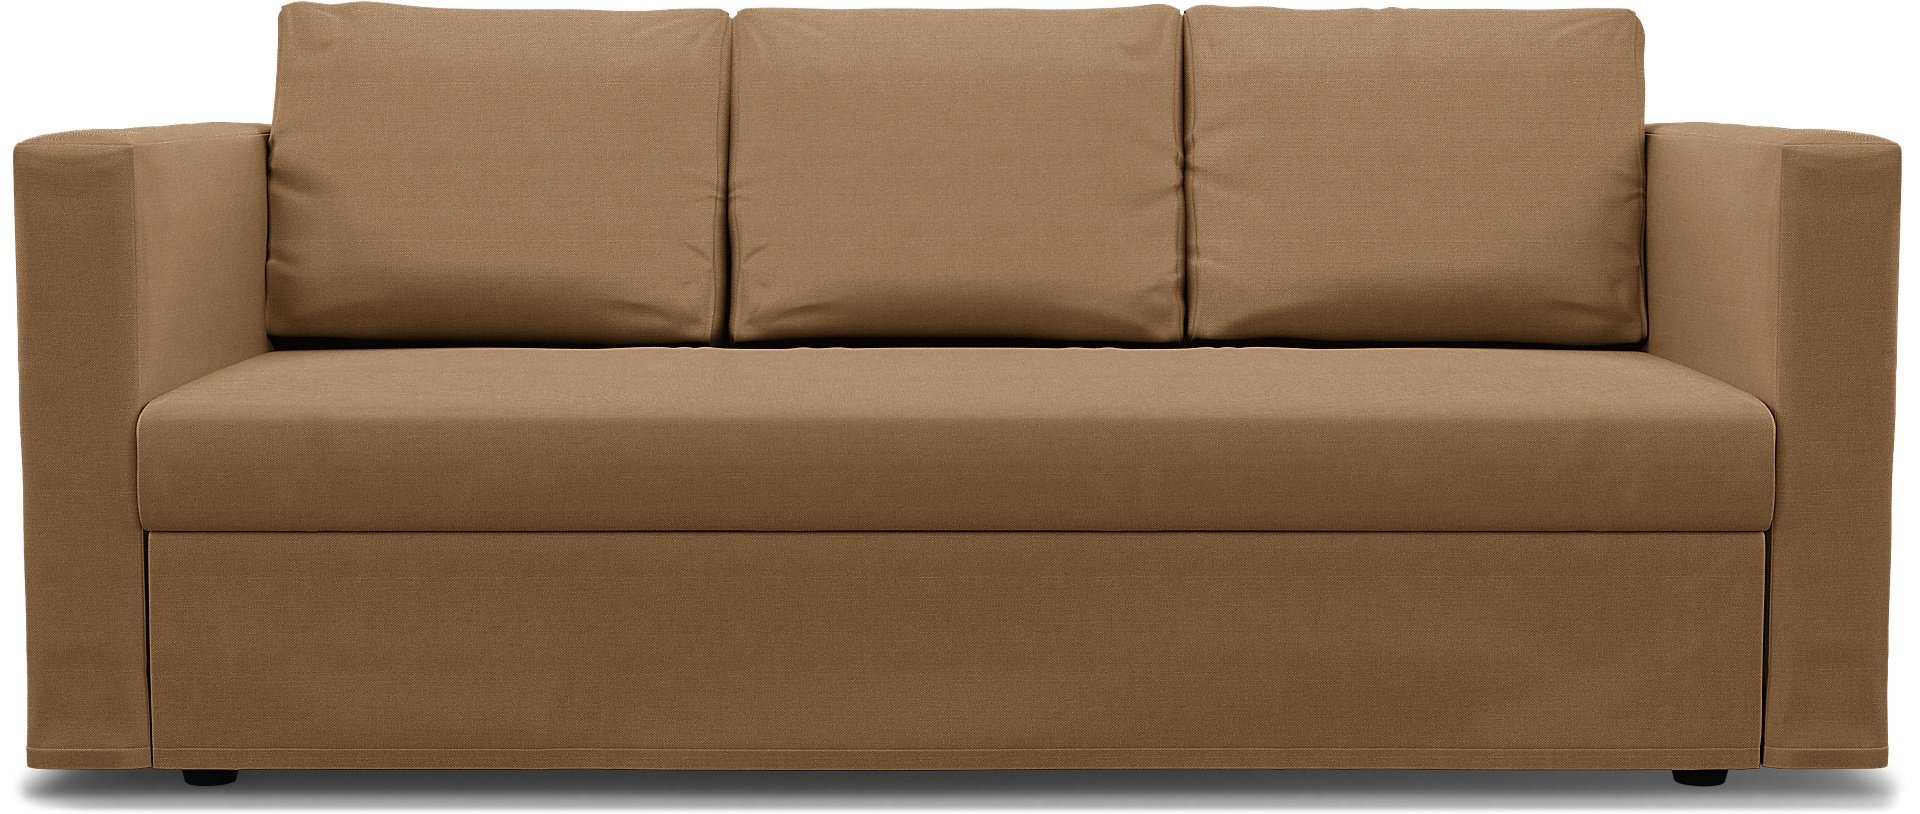 IKEA - Friheten 3 Seater Sofa Bed Cover, Nougat, Linen - Bemz